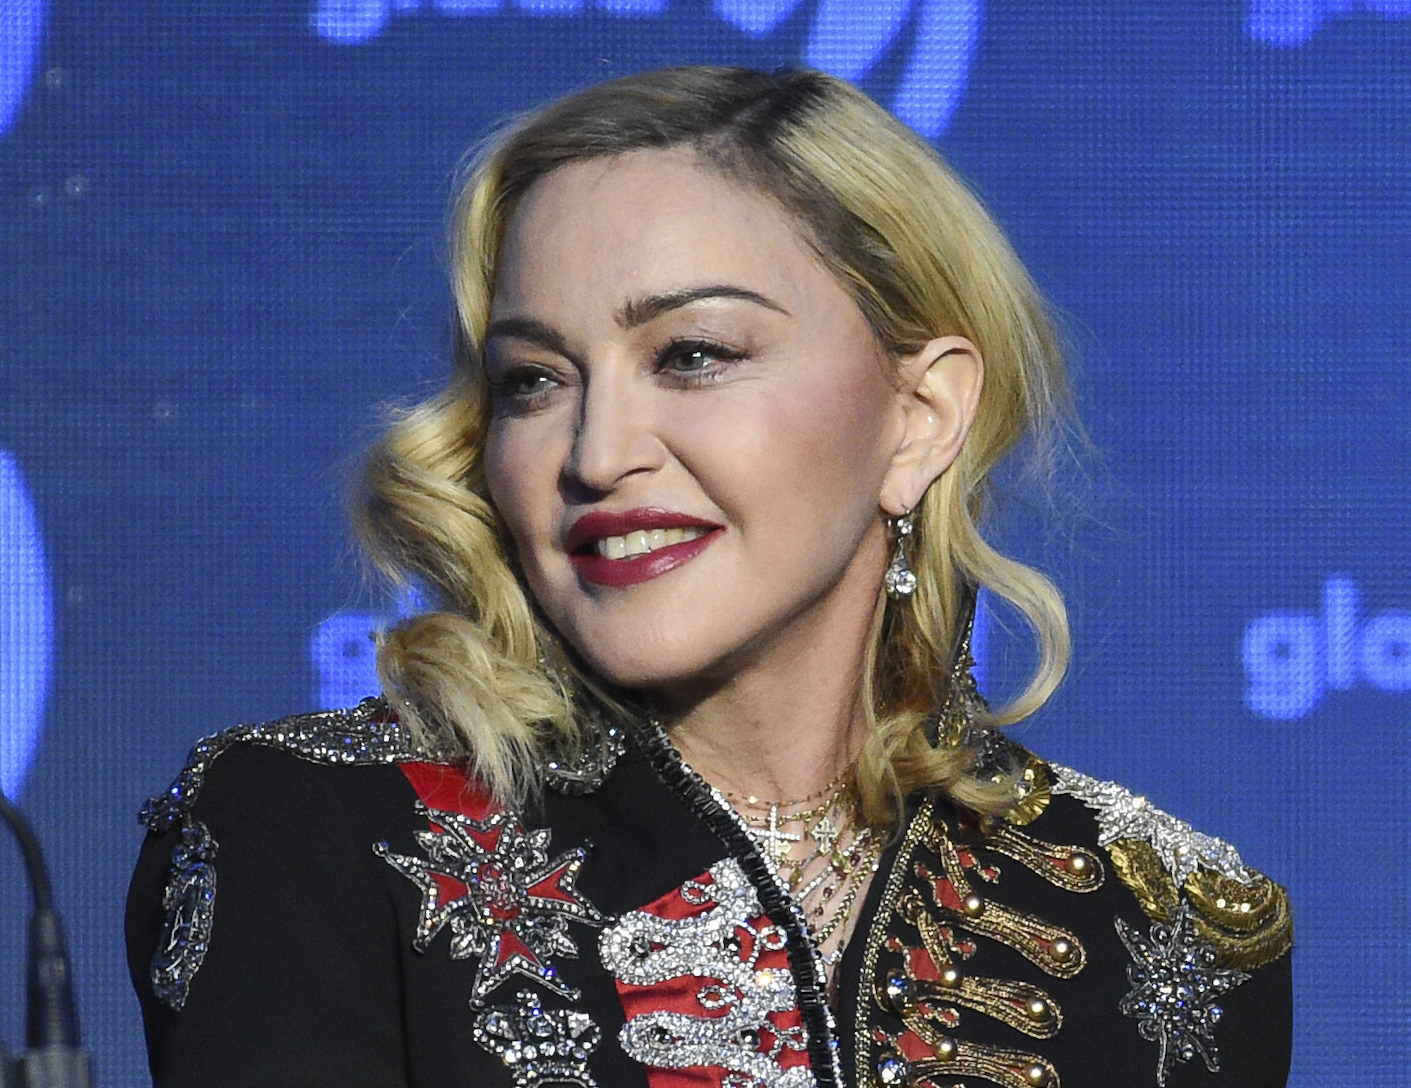 Die legendäre Pop-Ikone Madonna nimmt Medikamente, nachdem sie kürzlich ins Krankenhaus eingeliefert wurde